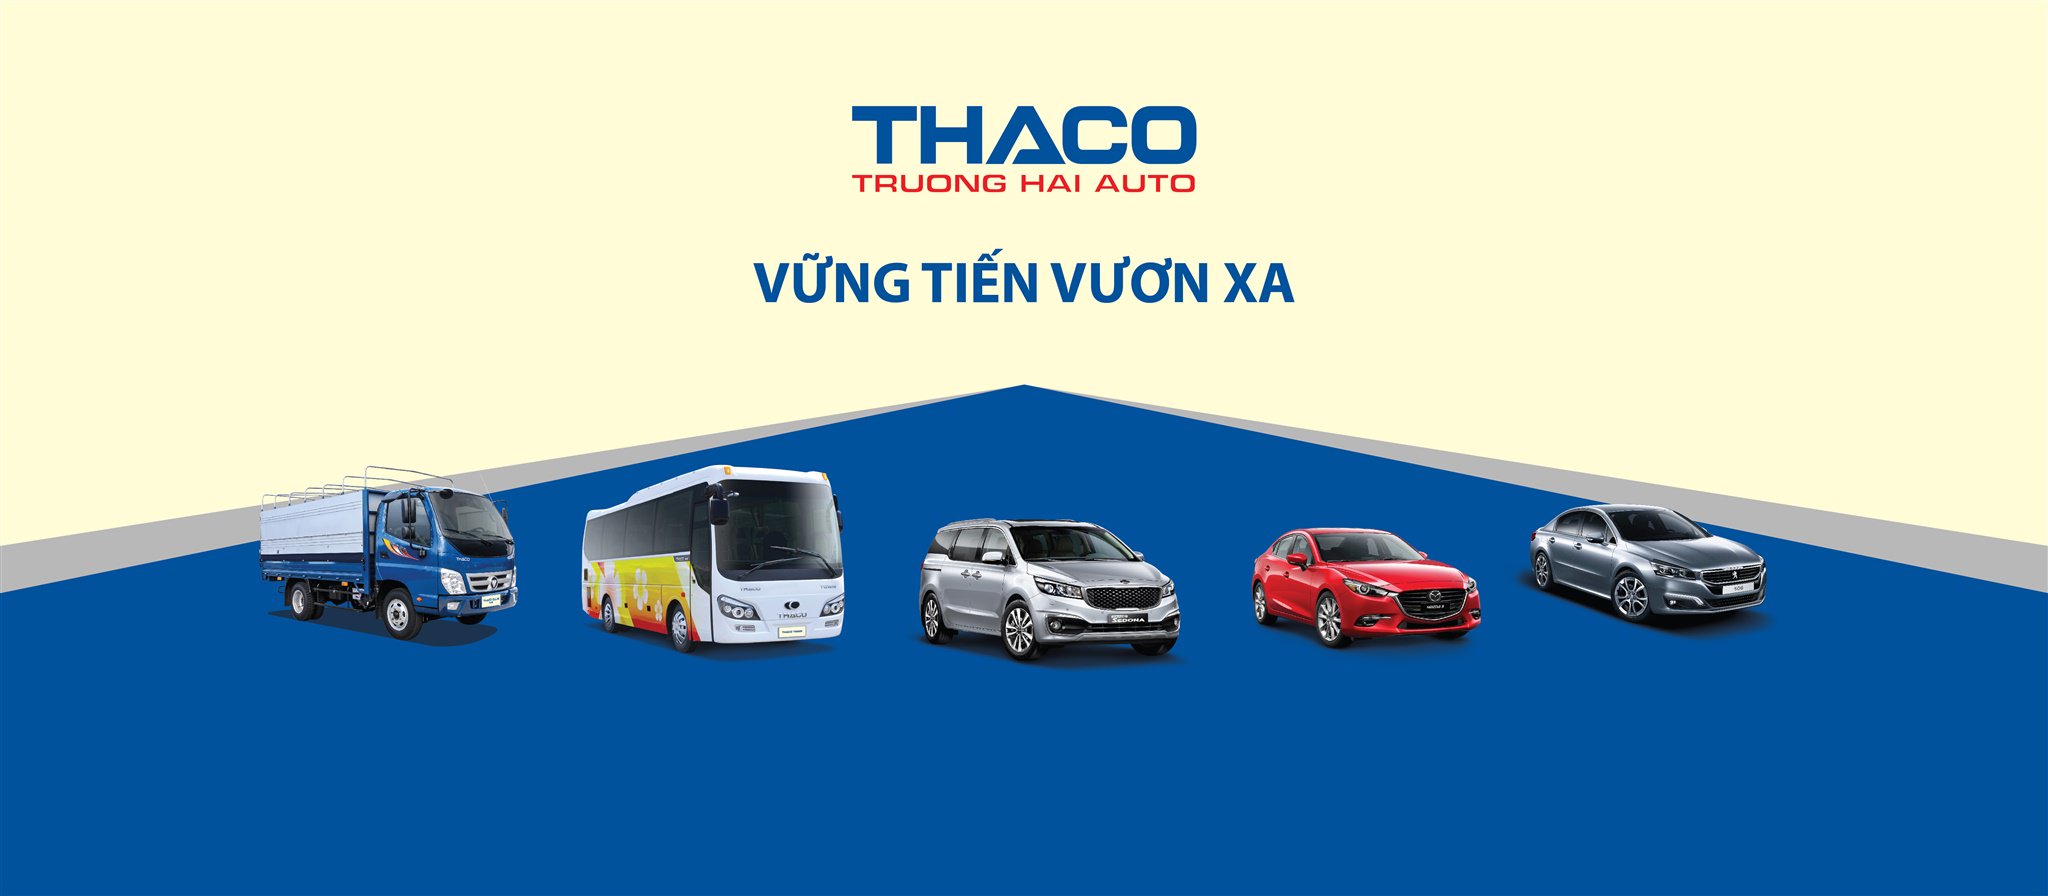 Xe tải Thaco là dòng sản phẩm vượt trội về chất lượng và hiệu suất. Nếu bạn đang tìm kiếm một chiếc xe tải ưng ý và phù hợp với nhu cầu của mình, hai thứ không thể thiếu đó là xe tải Thaco và bảng giá của nó. Hãy cùng khám phá hình ảnh liên quan để tìm hiểu thông tin chi tiết và đưa ra quyết định đúng đắn.